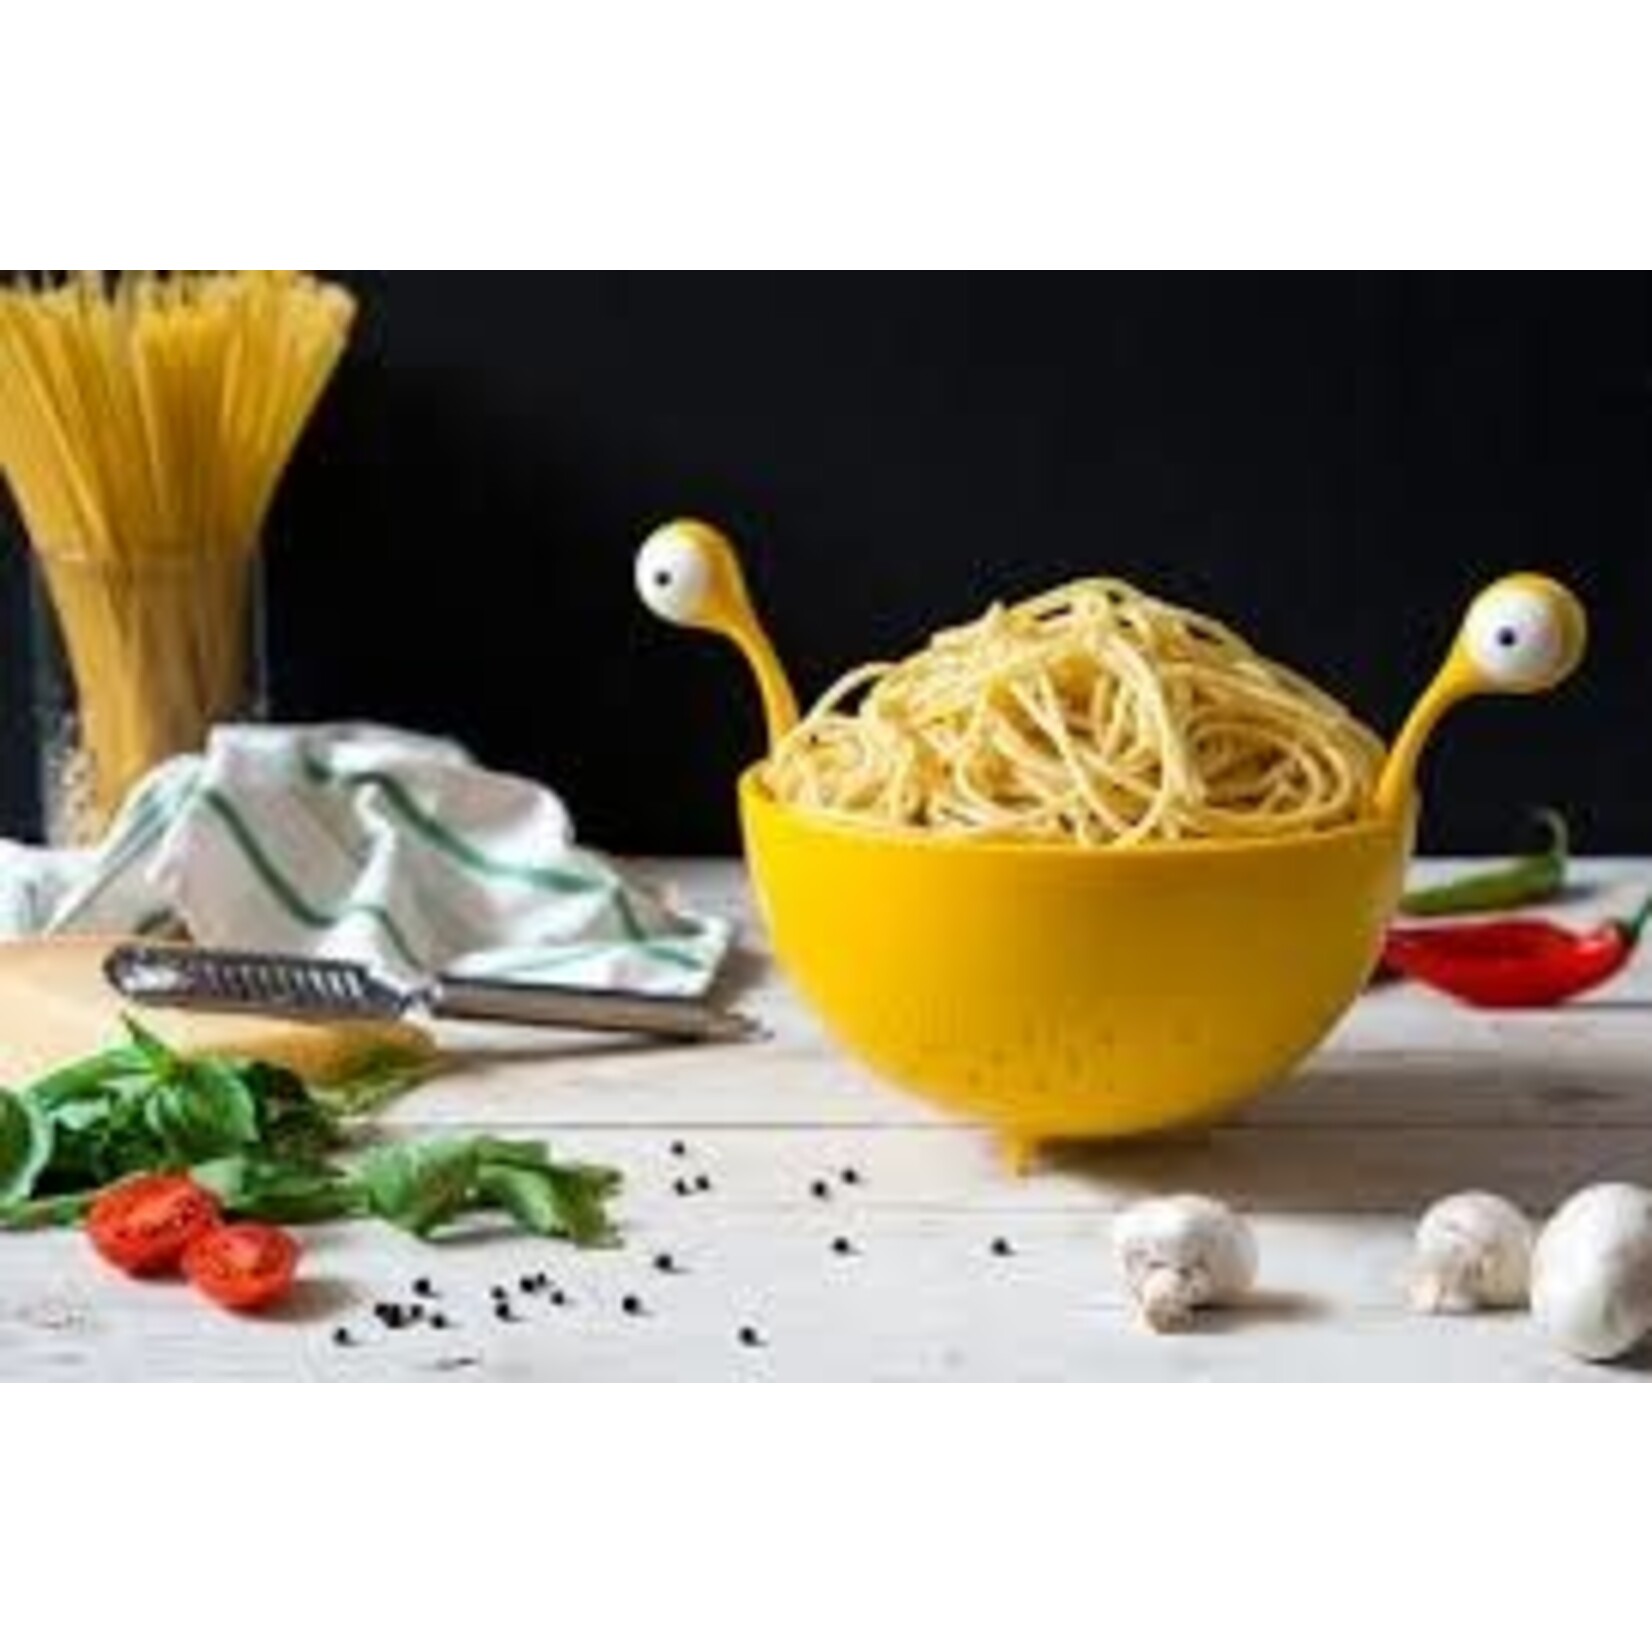 Diverse Merken Ototo Spaghetti Monster vergiet Ototo ot872